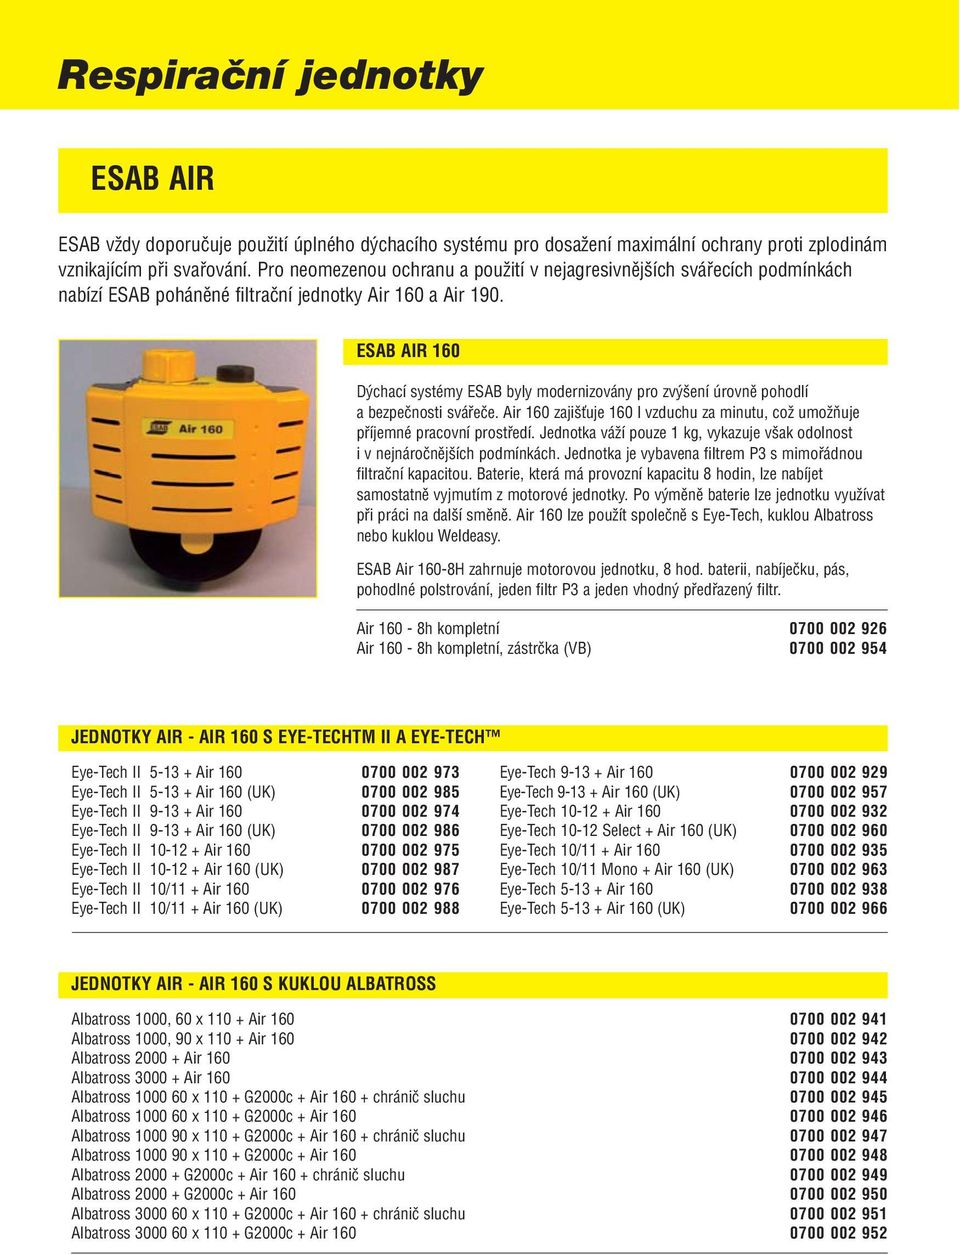 ESAB AIR 160 Dýchací systémy ESAB byly modernizovány pro zvýšení úrovně pohodlí a bezpečnosti svářeče. Air 160 zajišťuje 160 l vzduchu za minutu, což umožňuje příjemné pracovní prostředí.